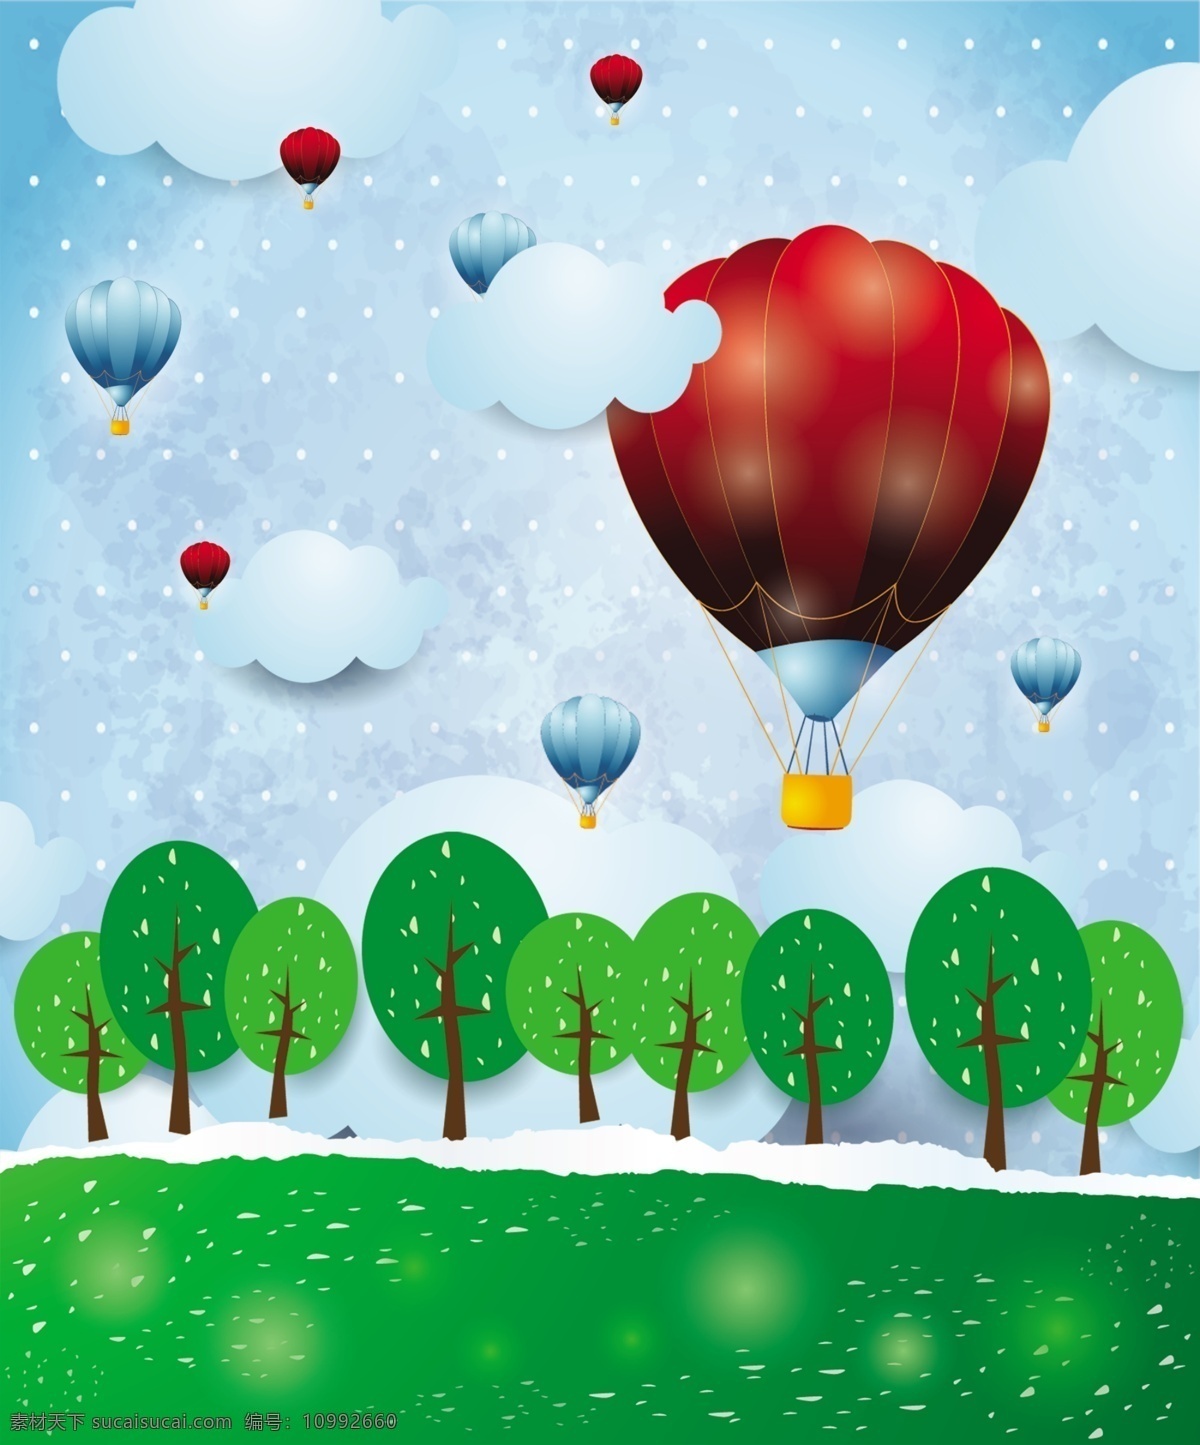 漫画背景 漫画 背景 树林 气球 热气球 天空